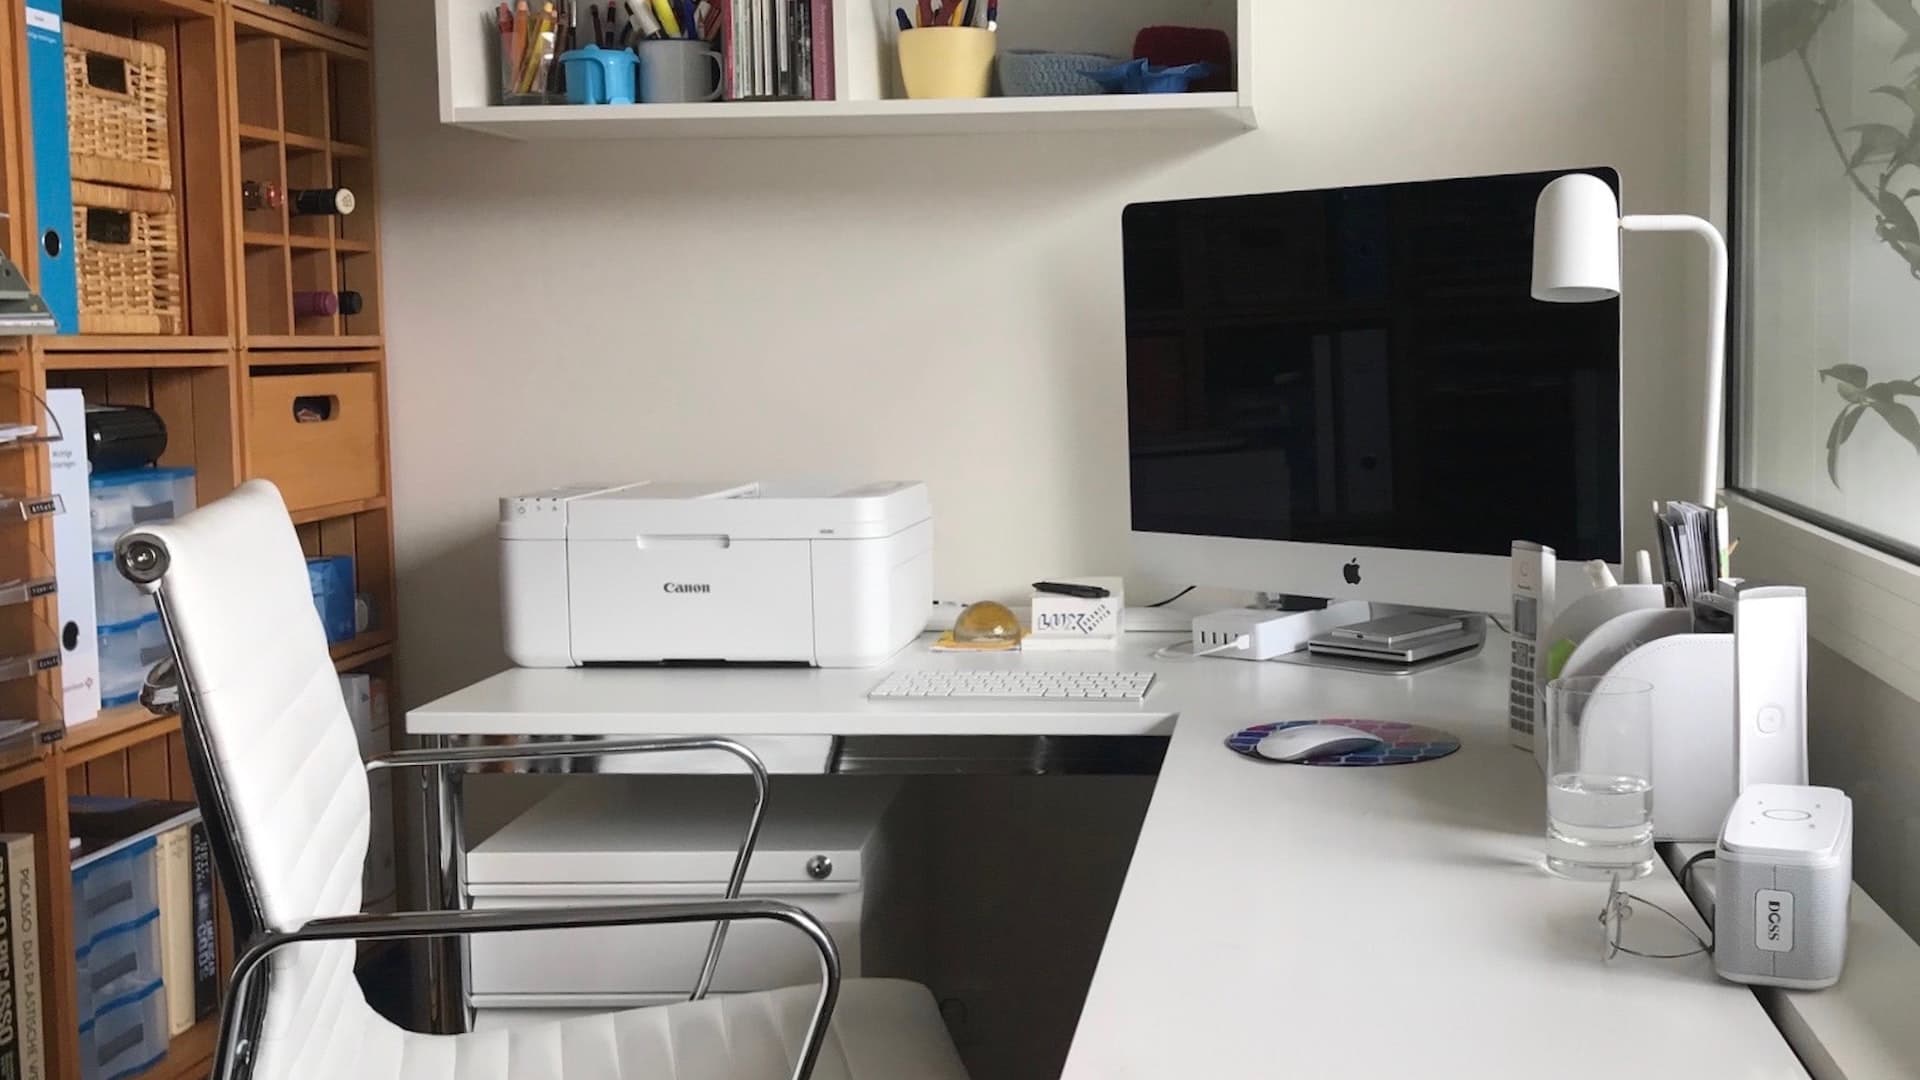 iMac and printer kept on a table